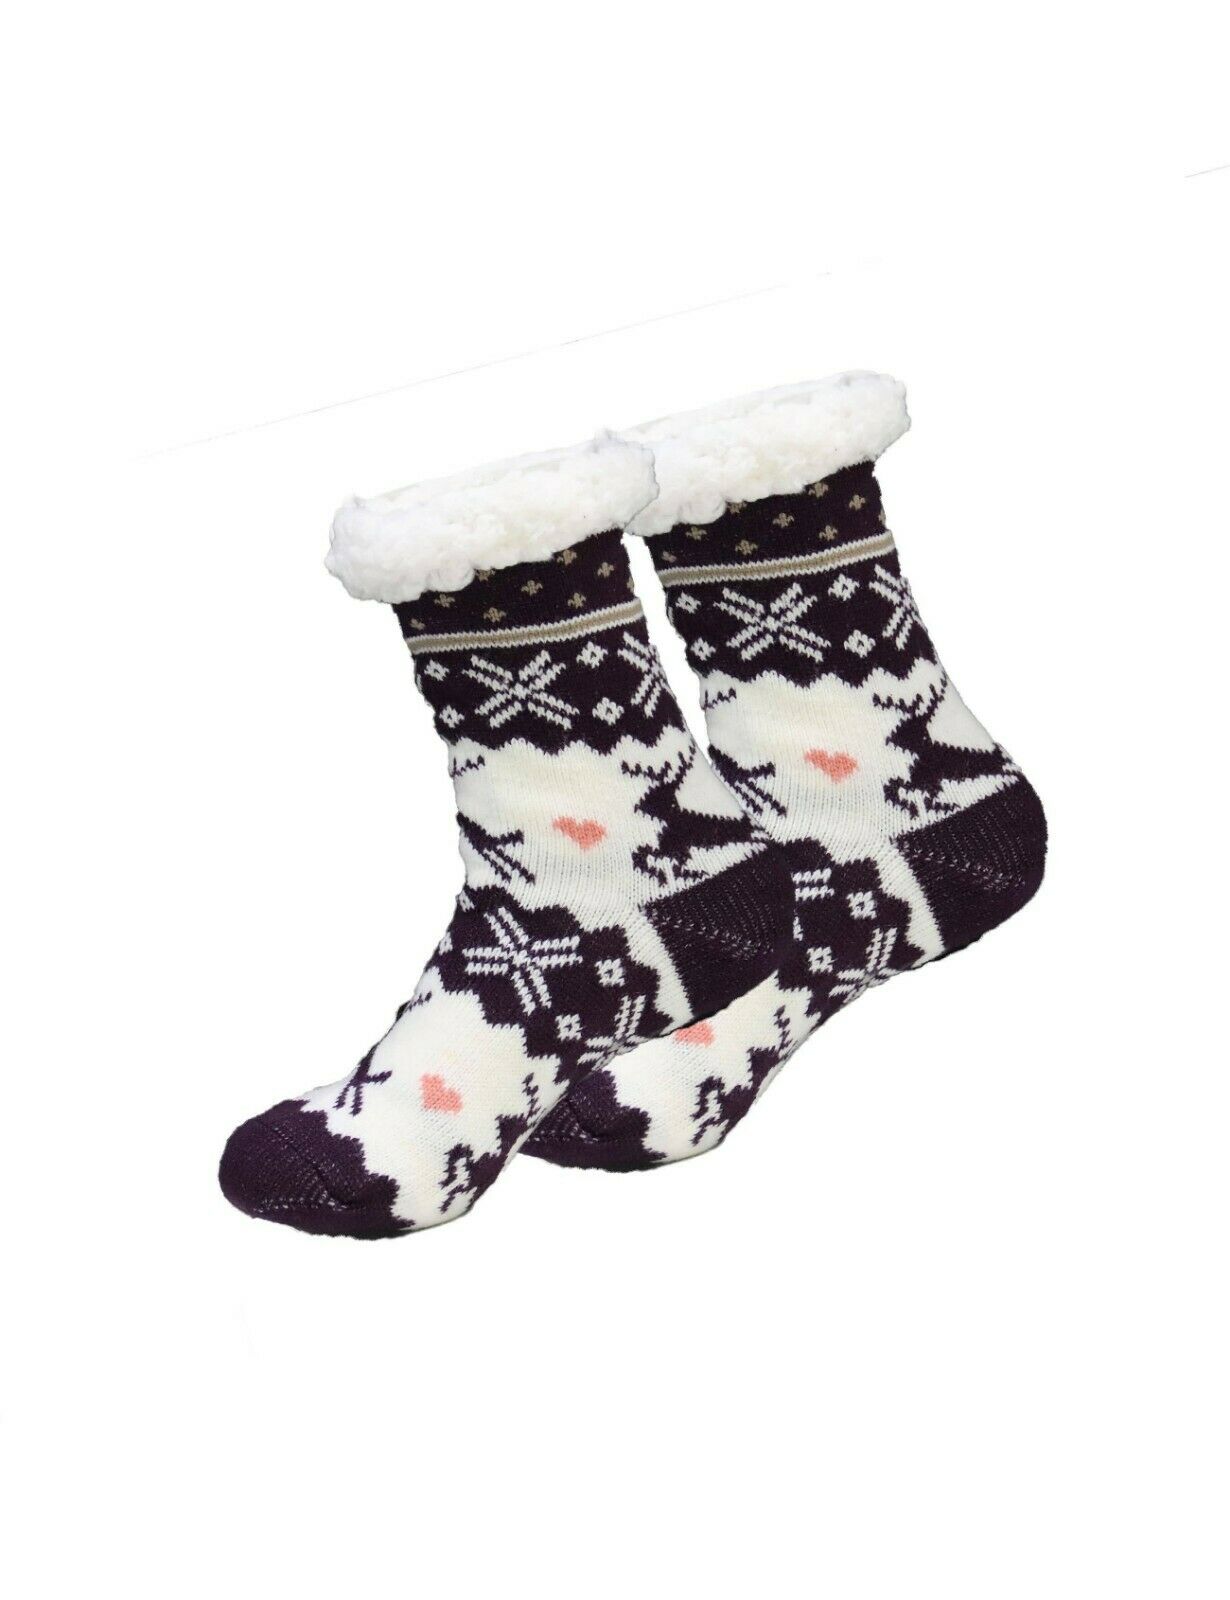 RAIKOU Haussocken Wintersocken Kuschelsocken gefütterte Socken dicke Socken Weihnachtssocken, Rentiersocken mit rutschfesten Noppen (Anthrazit,One Size)